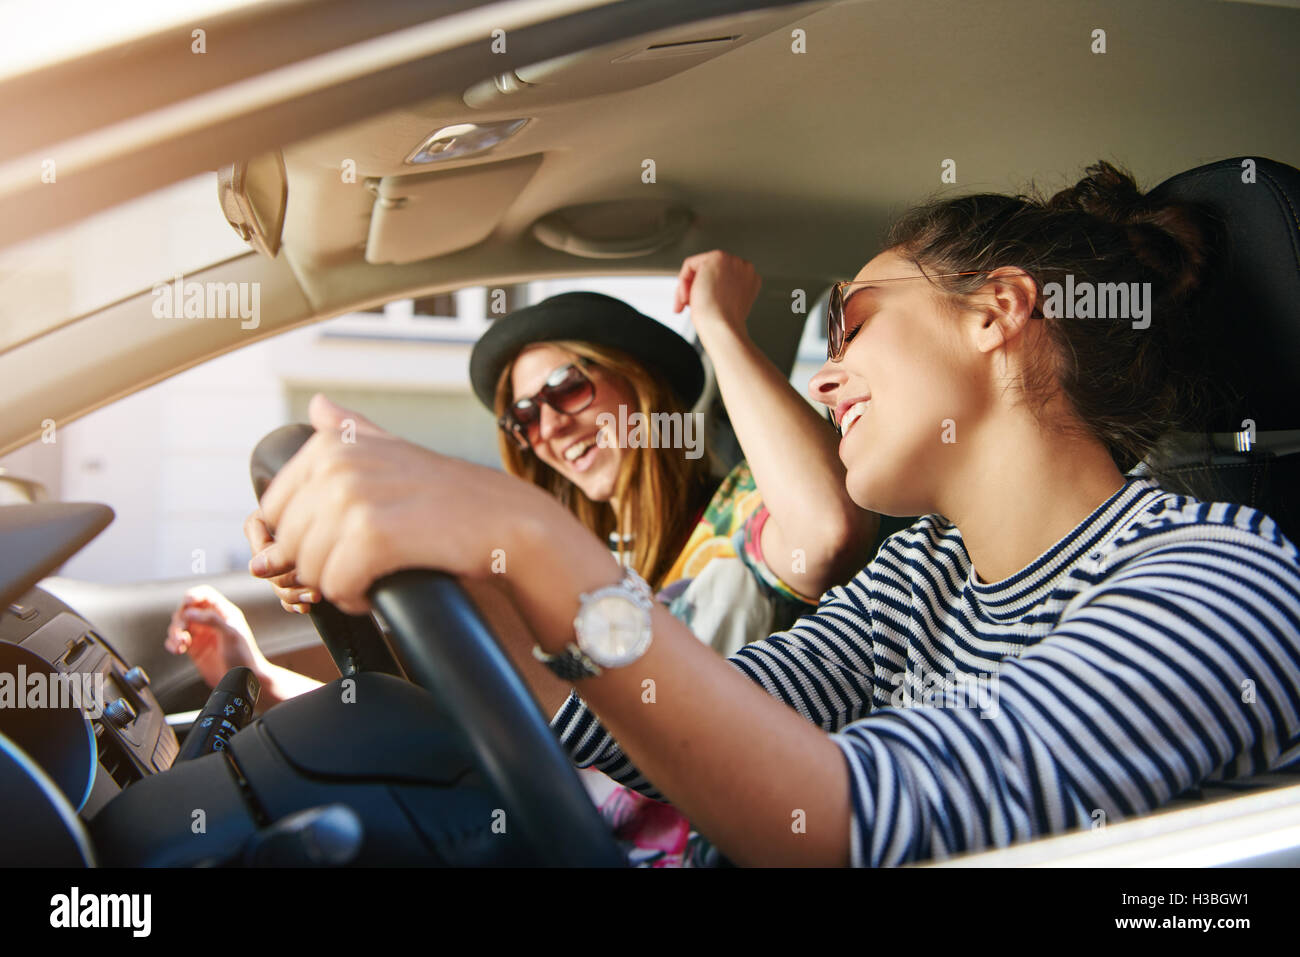 Junge Weibliche Fahrer Abspielen Von Musik Im Auto (wechselnde CDs)  Lizenzfreie Fotos, Bilder und Stock Fotografie. Image 11533651.